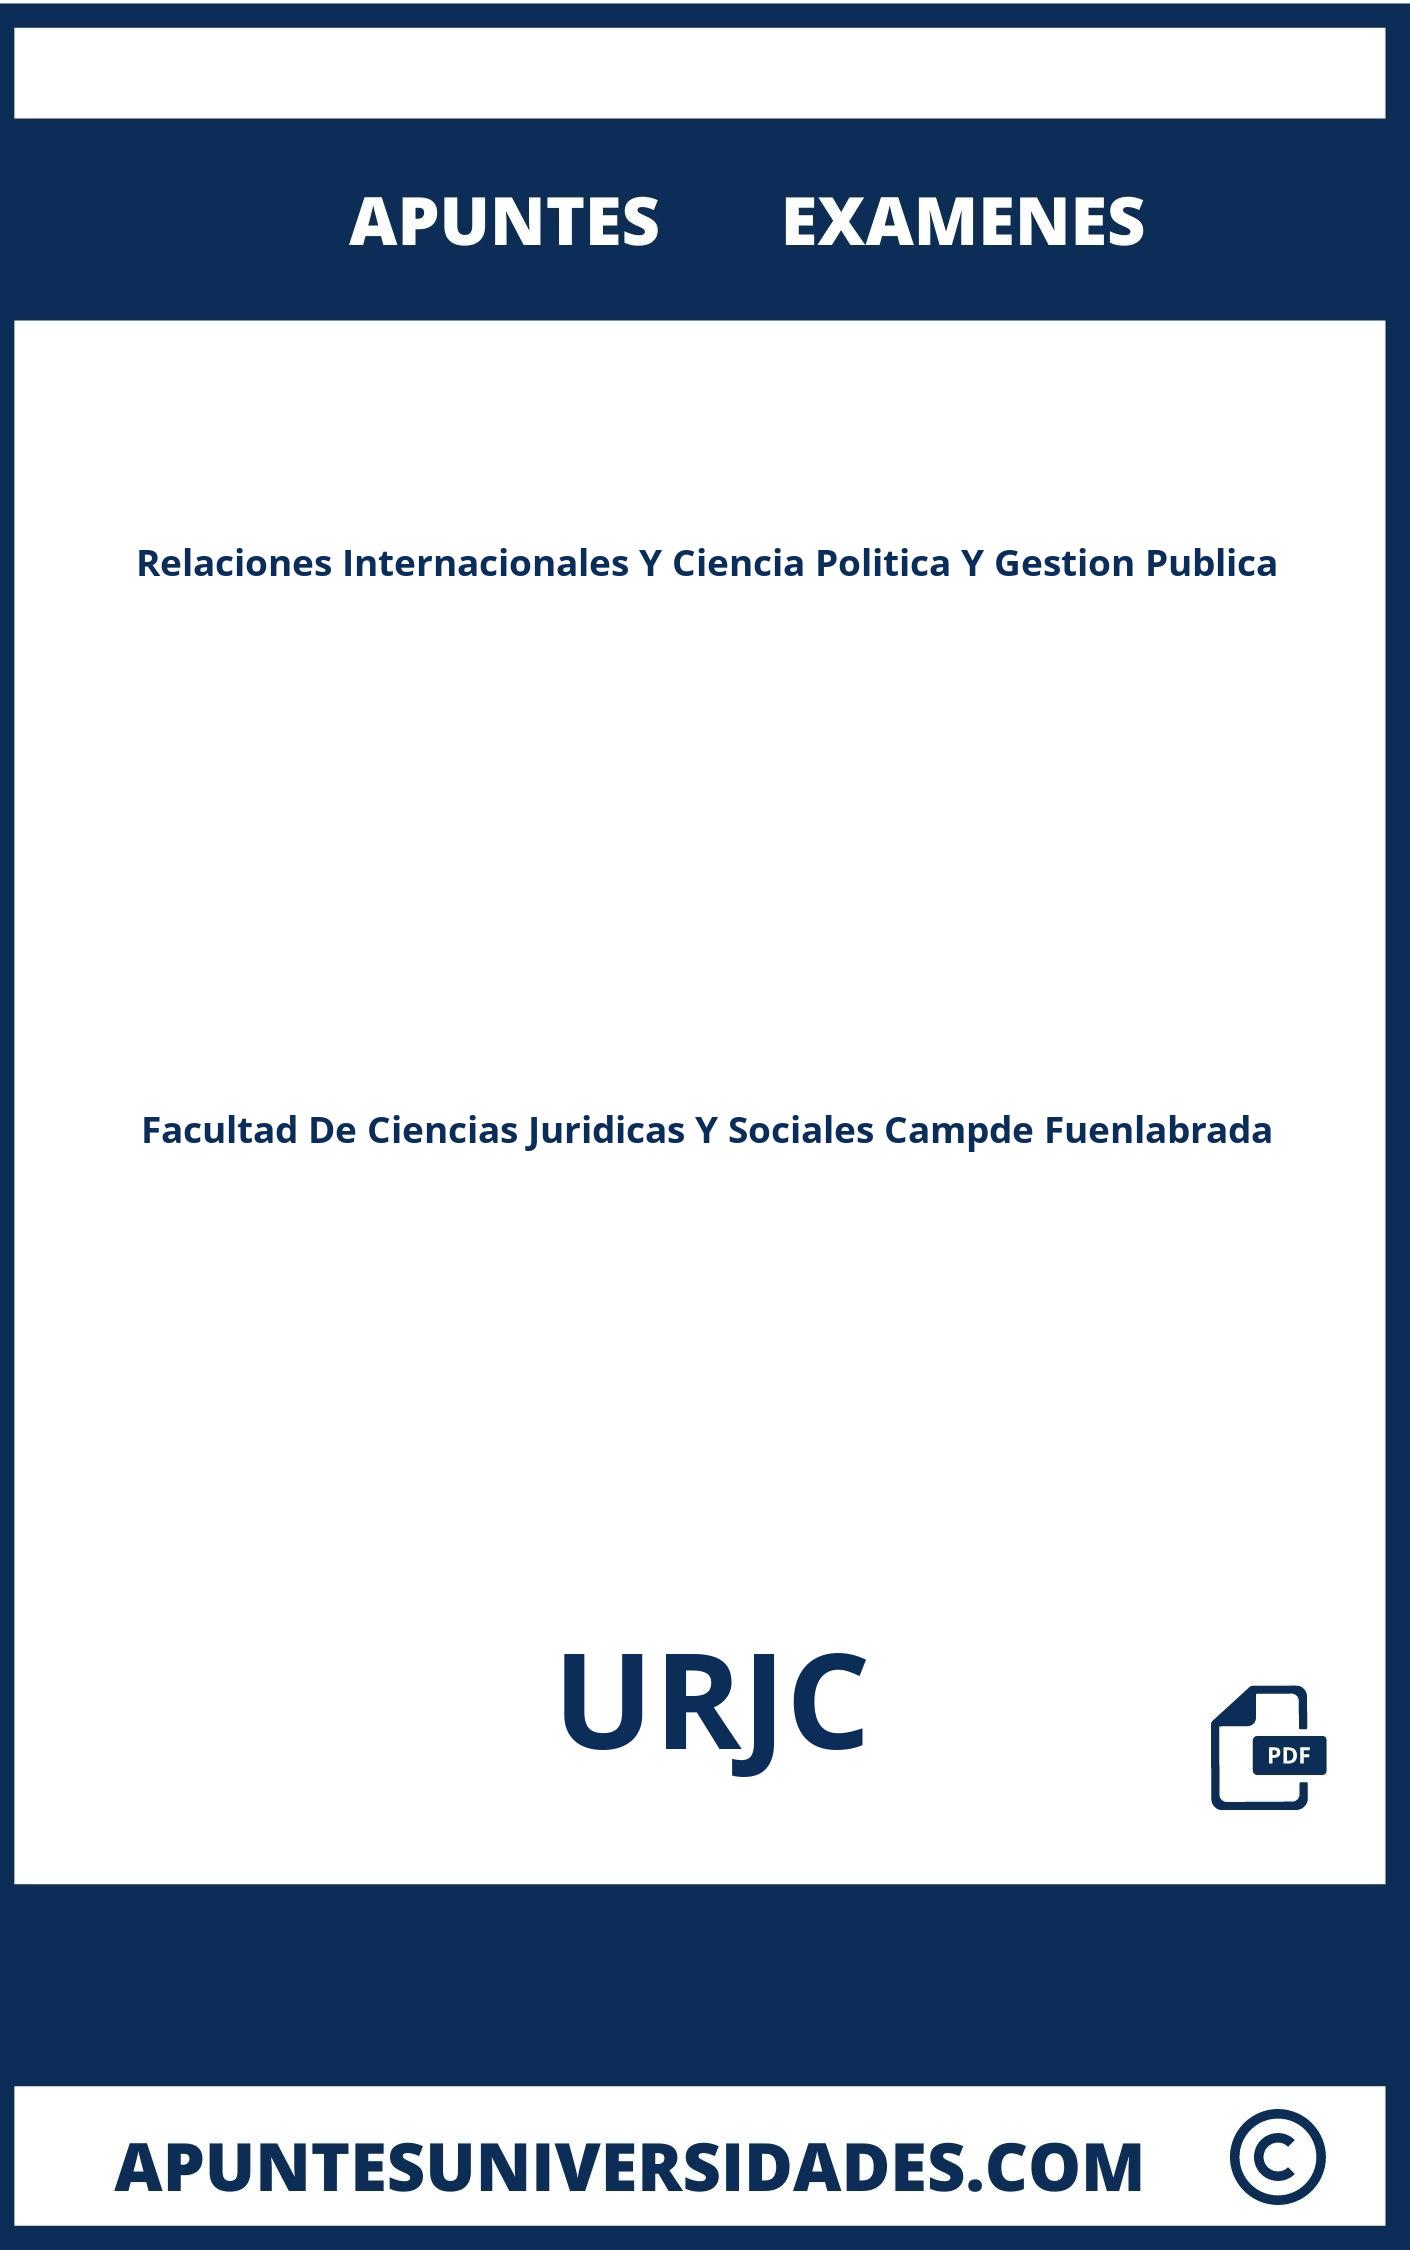 Examenes y Apuntes Relaciones Internacionales Y Ciencia Politica Y Gestion Publica URJC